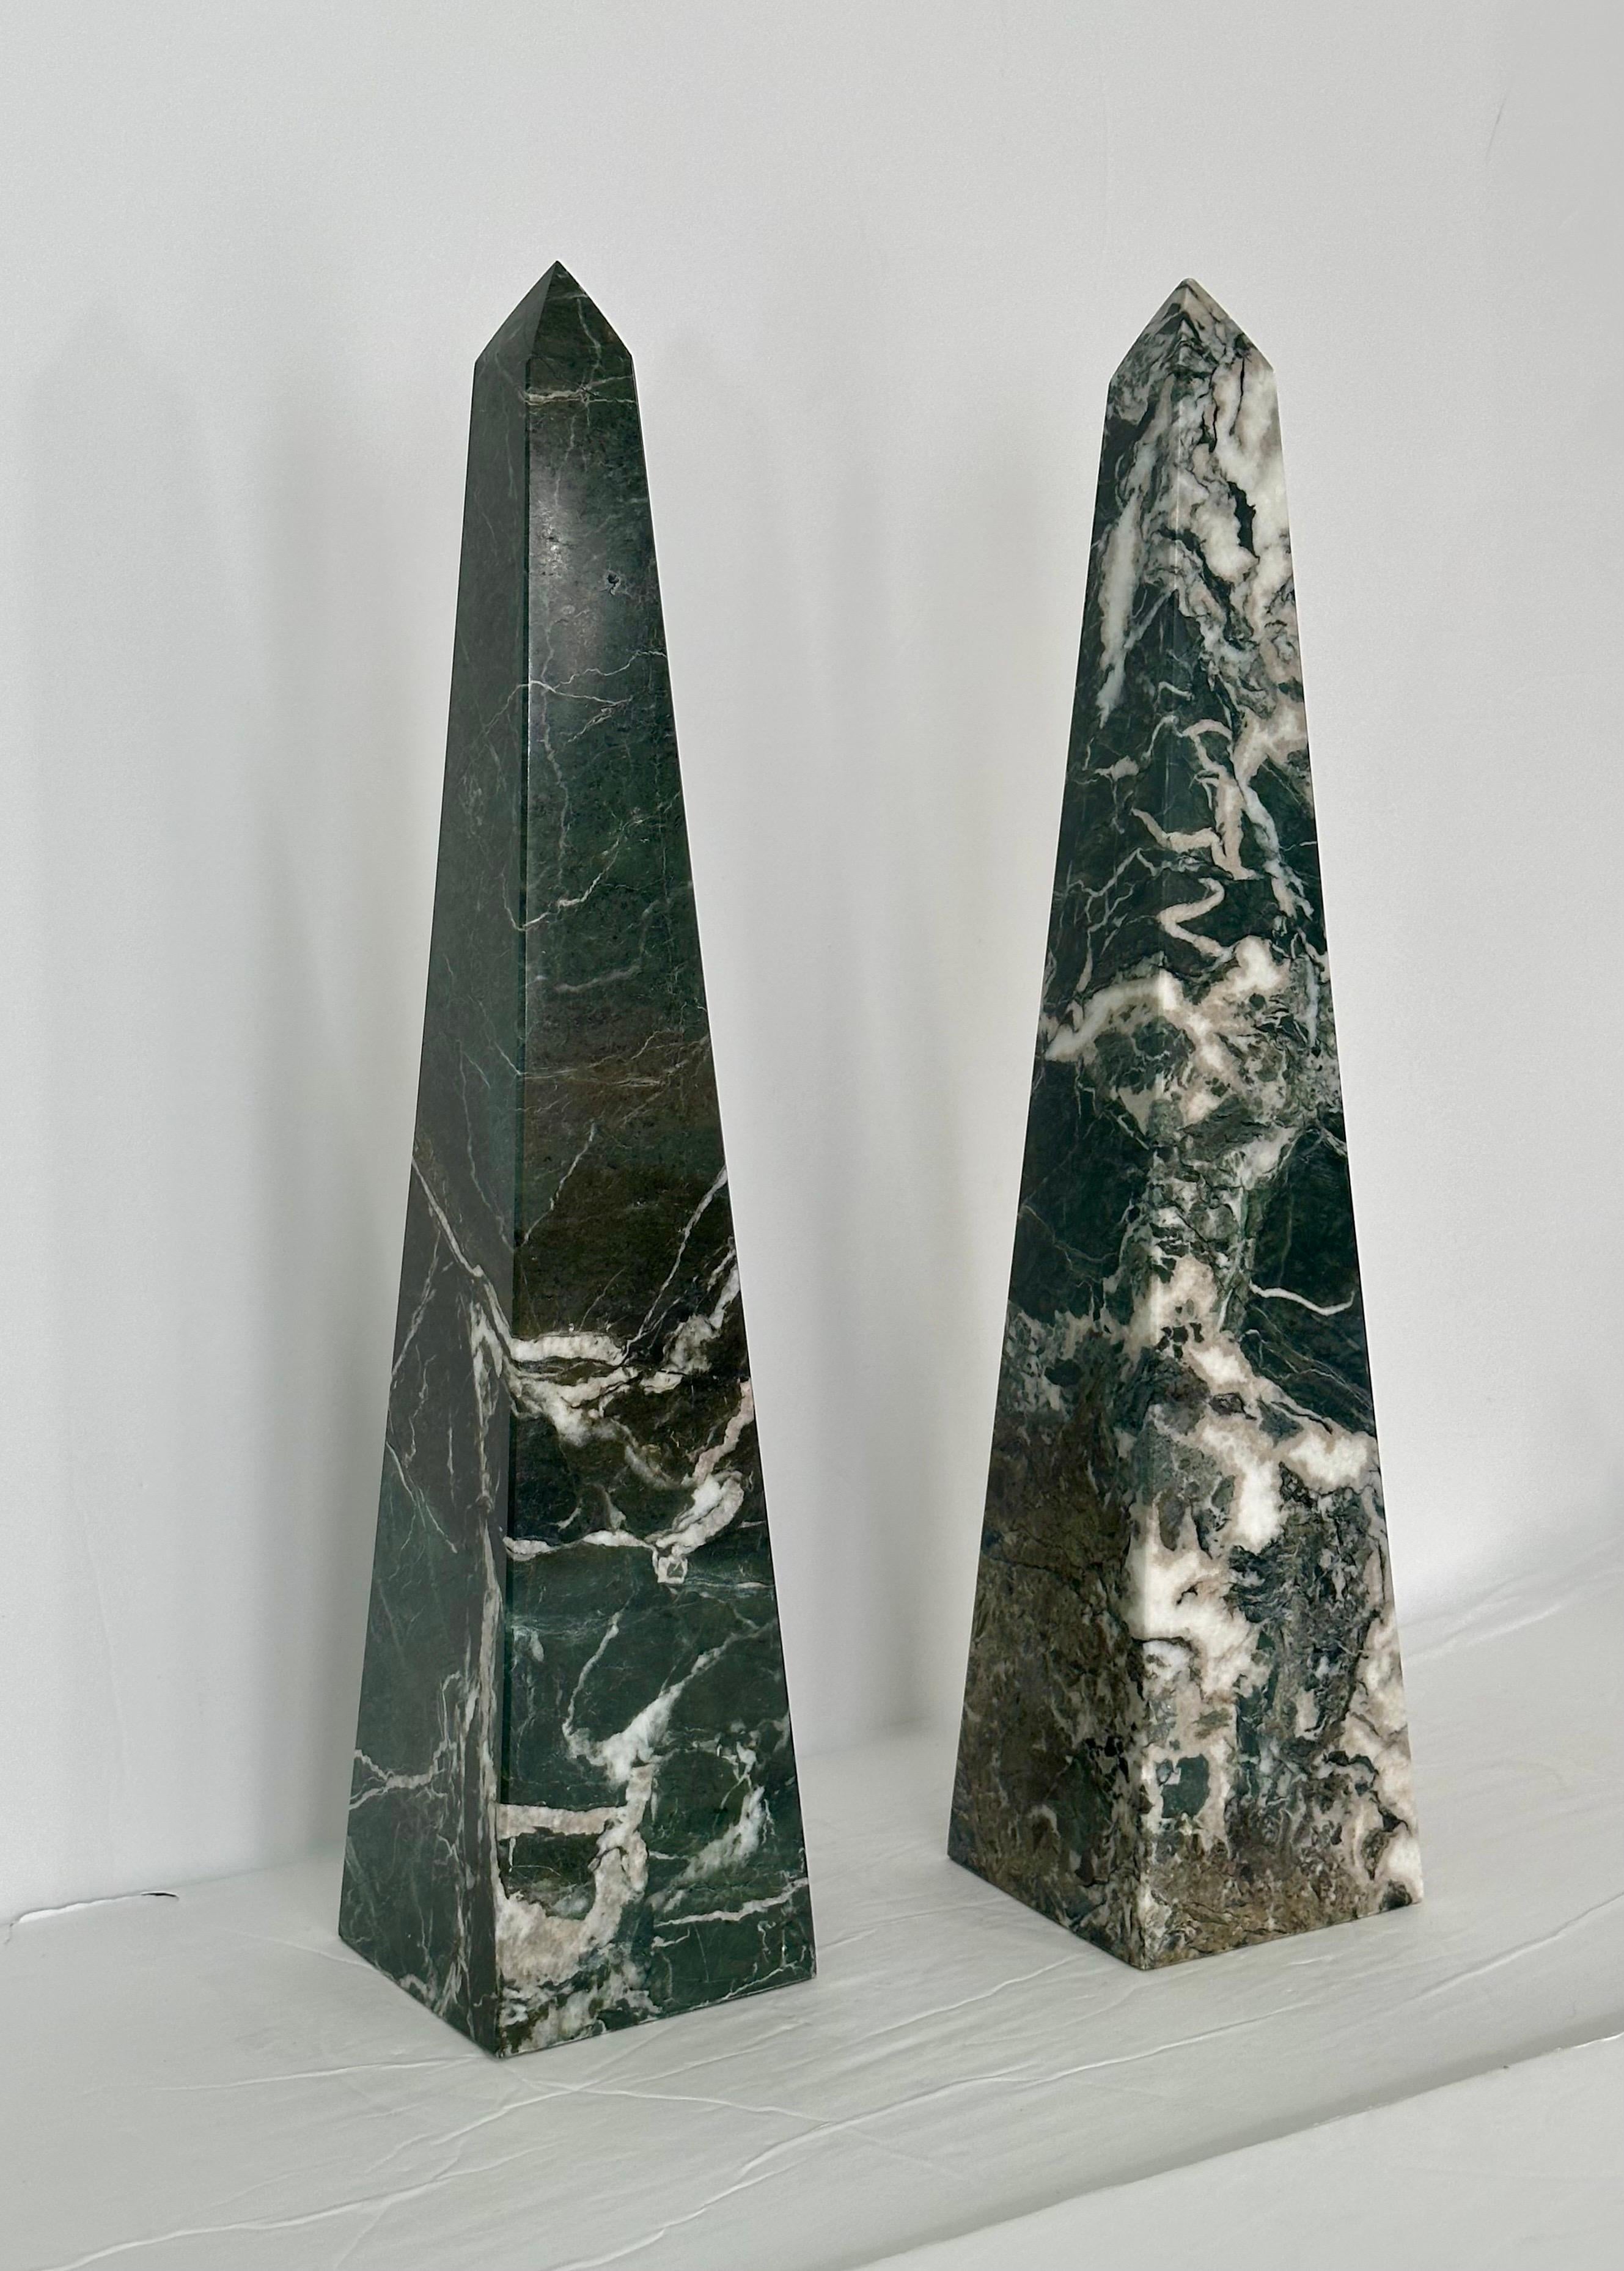 Nous avons le plaisir de vous proposer une paire de magnifiques obélisques en pierre, datant des années 1970.  Sculptés dans du marbre fin, ces obélisques présentent une palette de couleurs envoûtante qui comprend des nuances de vert, de blanc et de